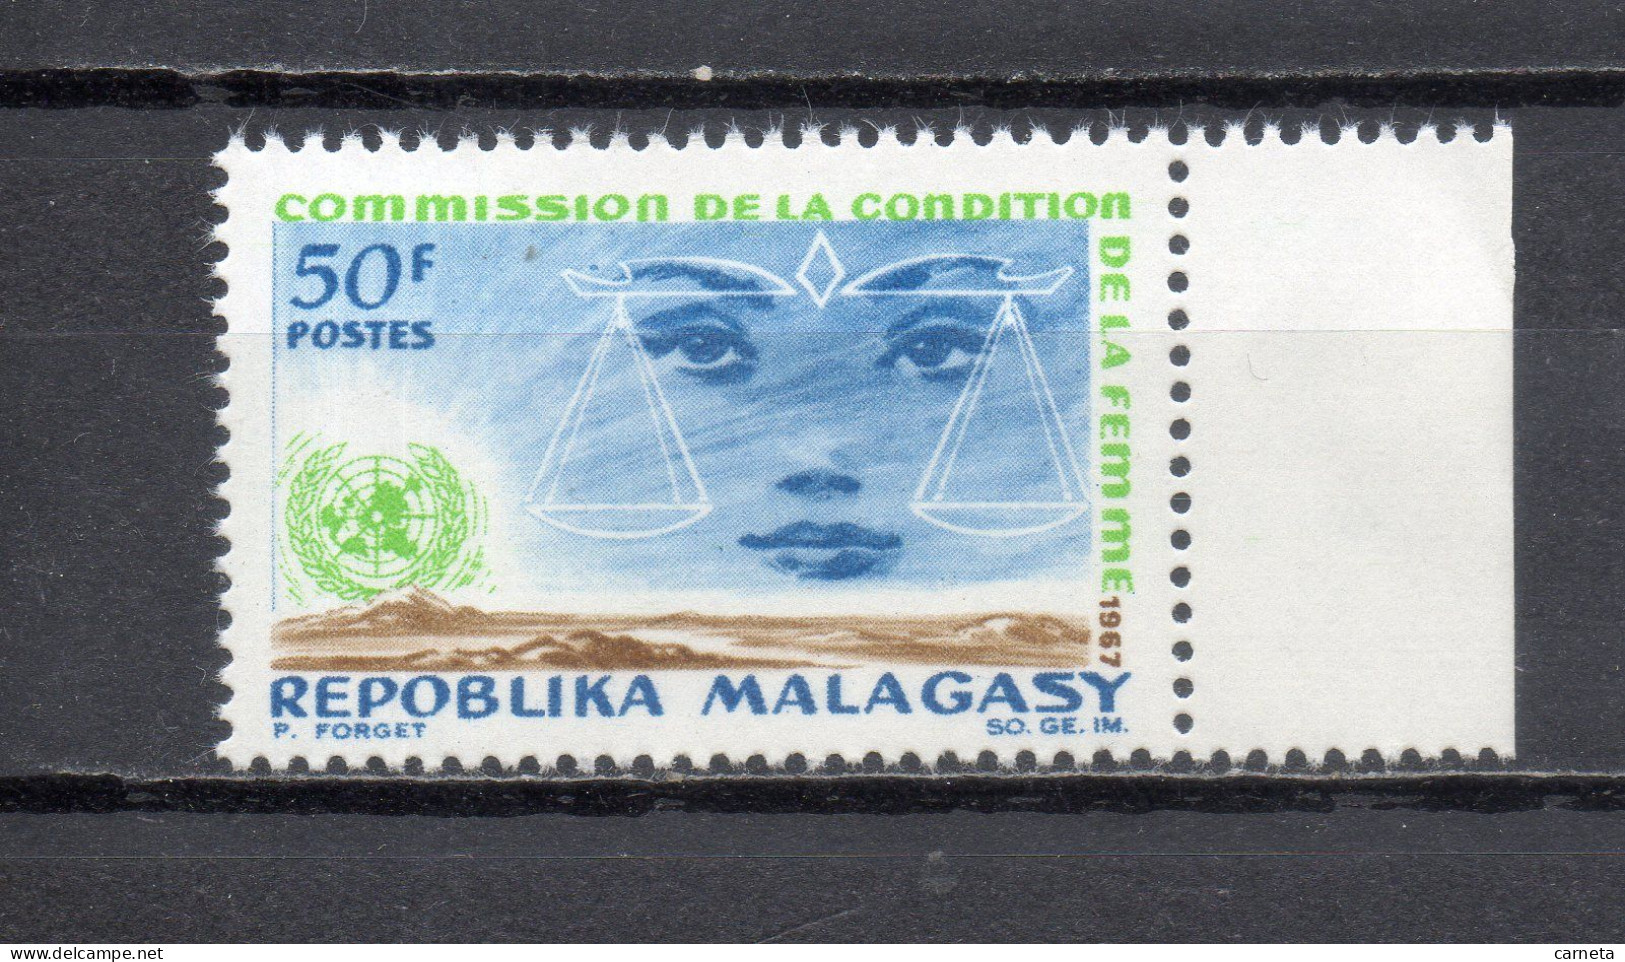 MADAGASCAR   N° 445   NEUF SANS CHARNIERE  COTE  1.00€   NATIONS UNIES CONDITION DE LA FEMME - Madagascar (1960-...)